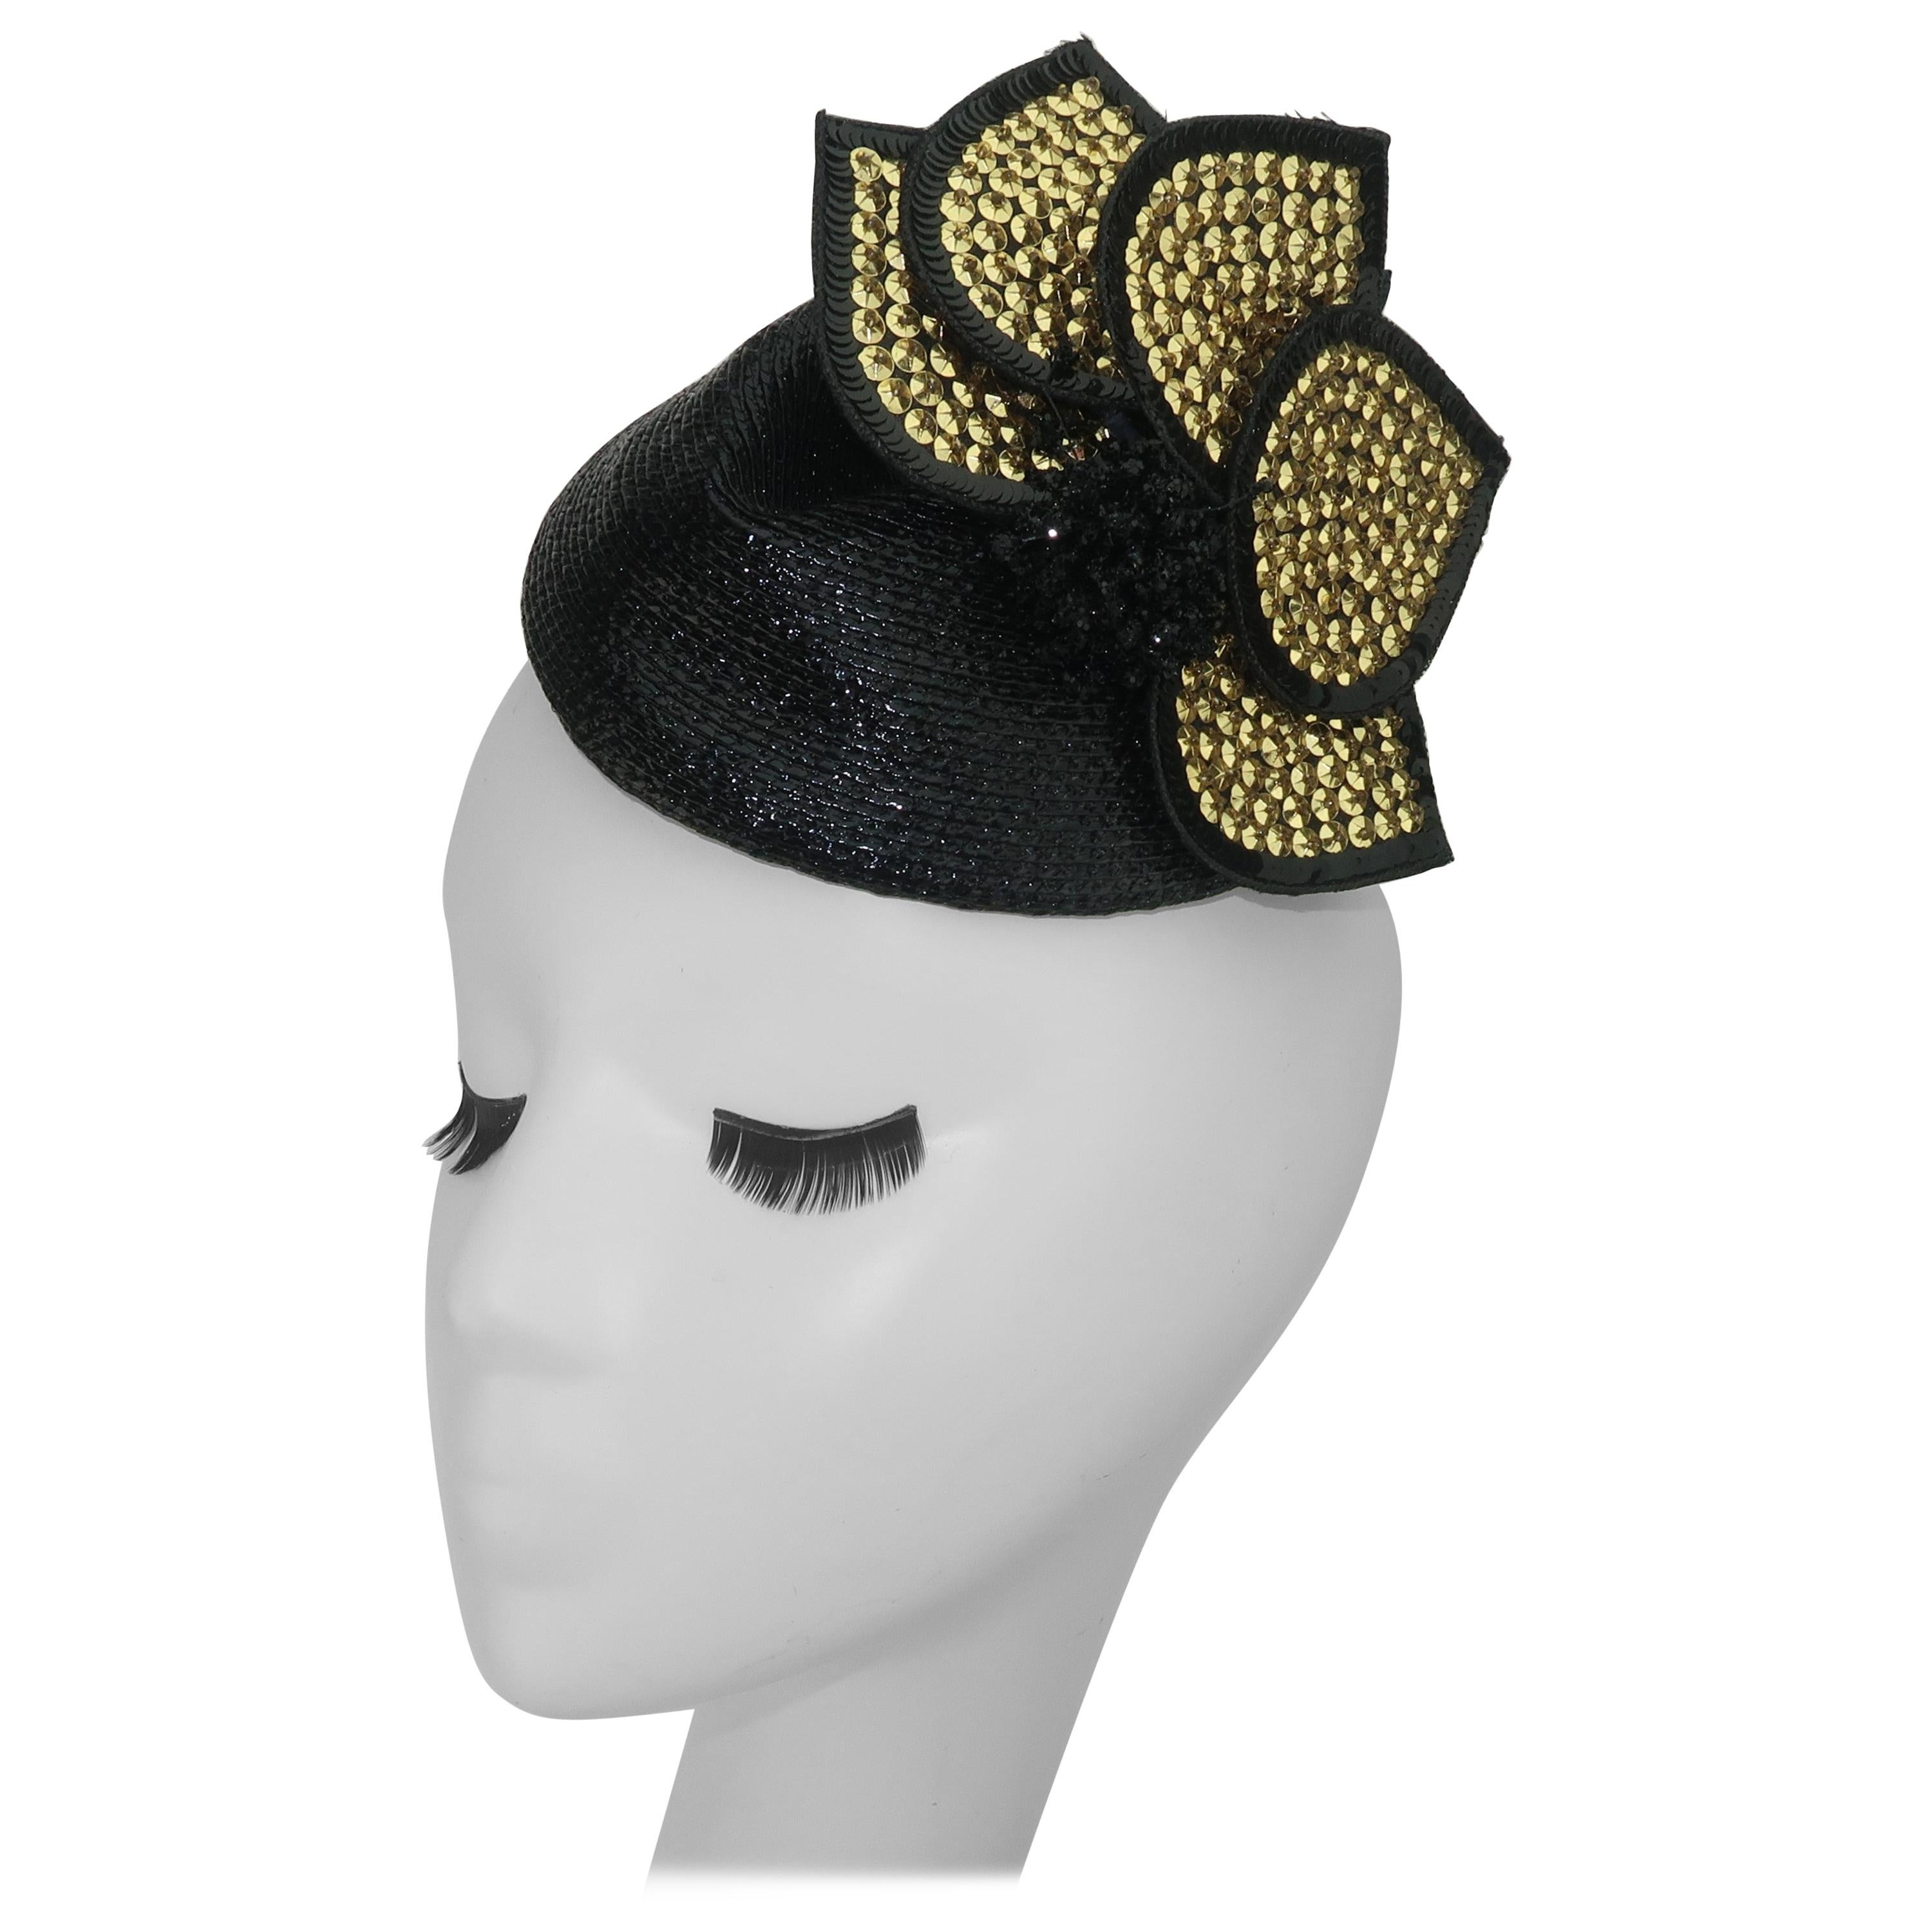 Vintage Black Straw Fascinator Hat With Gold Sequins